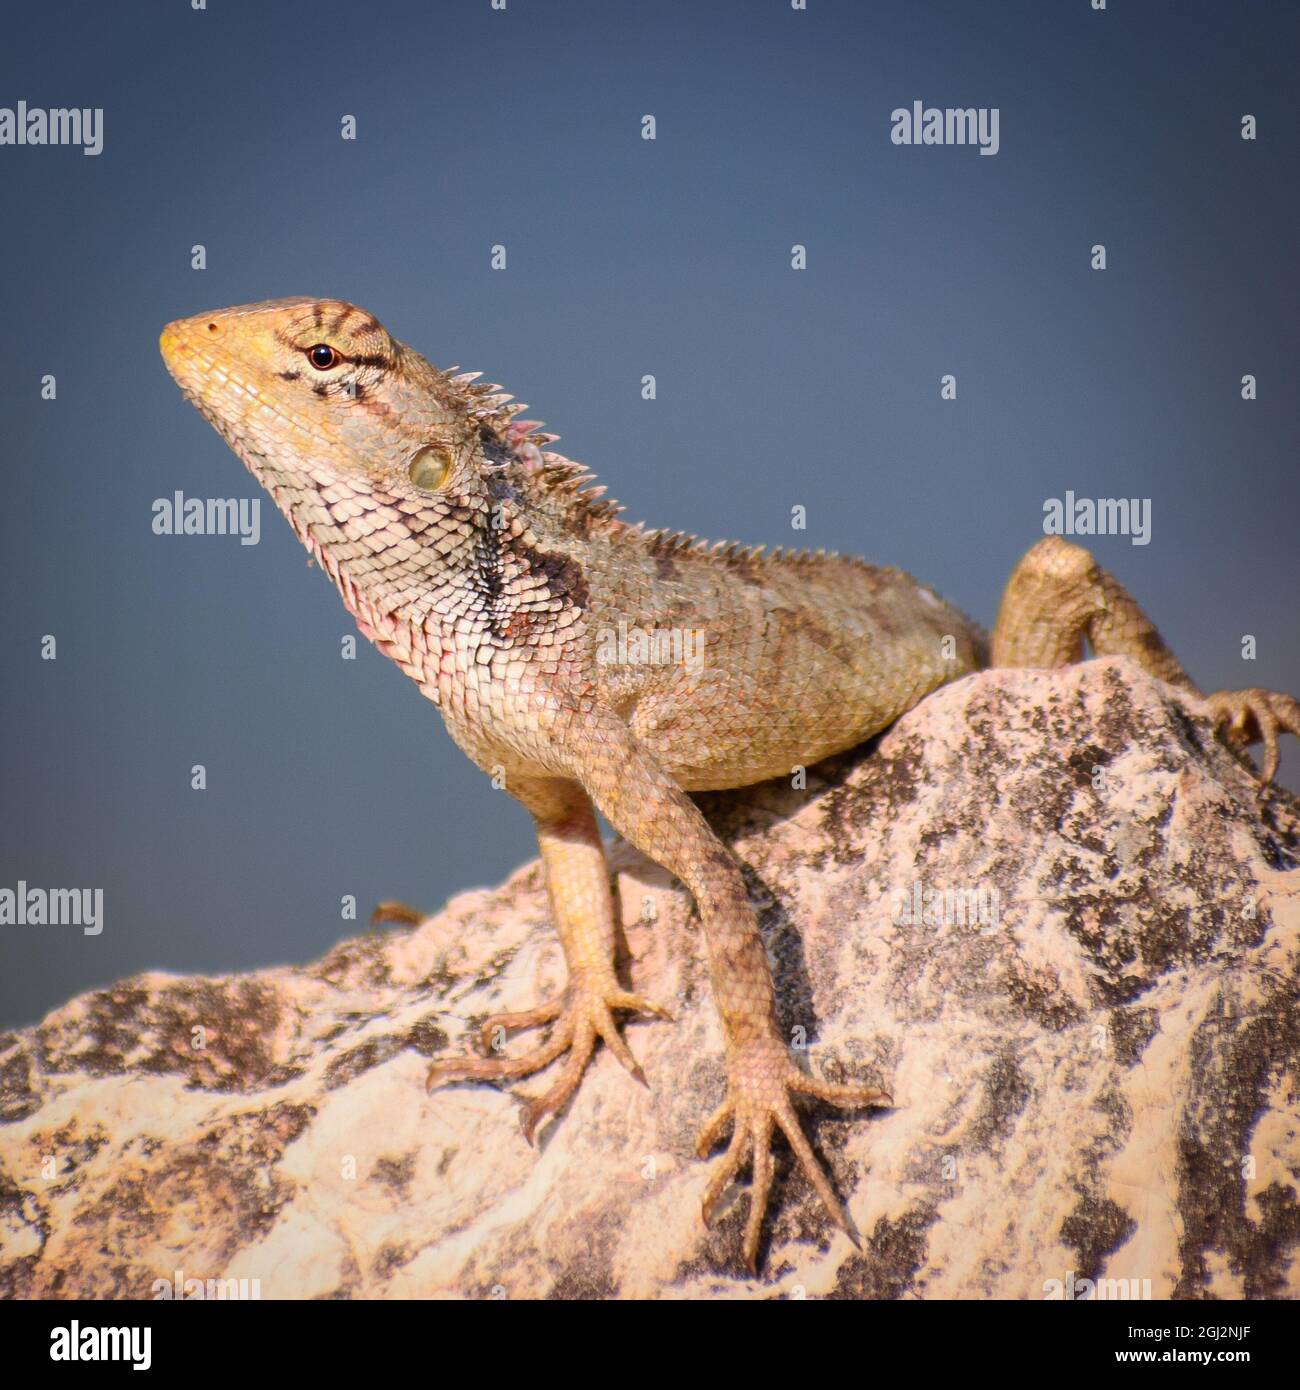 beautiful garden lizard on stone.( calotes versicolor) Stock Photo